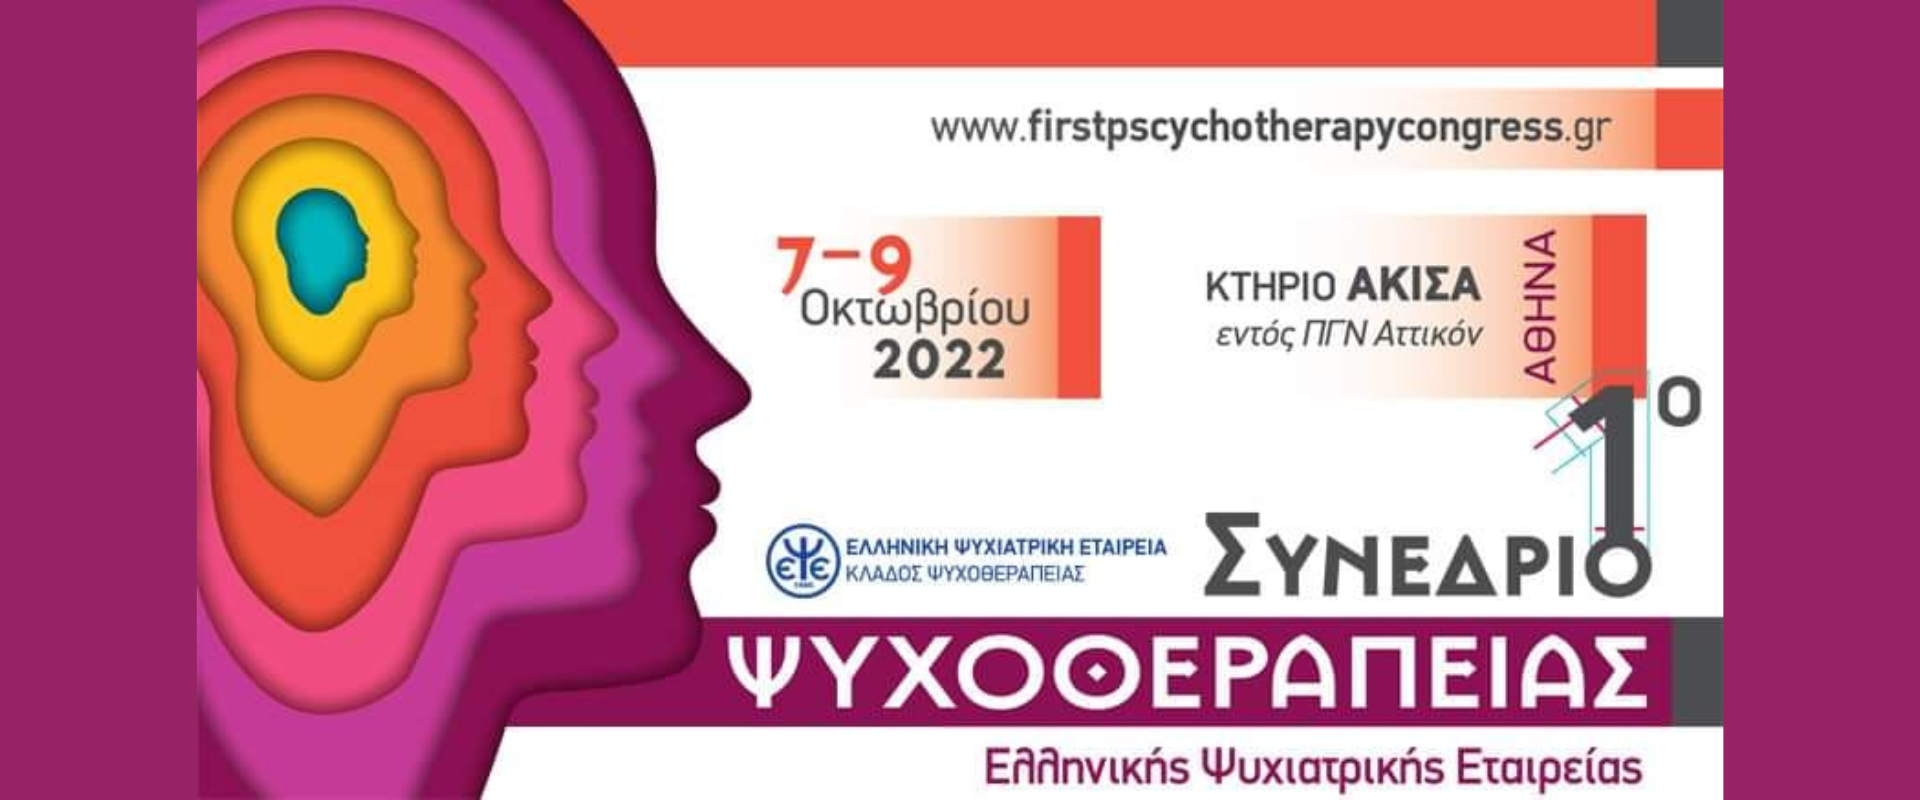 1ο Συνέδριο Ψυχοθεραπείας - Ελληνική Ψυχιατρική Εταιρεία | 7-9 Οκτωβρίου 2022